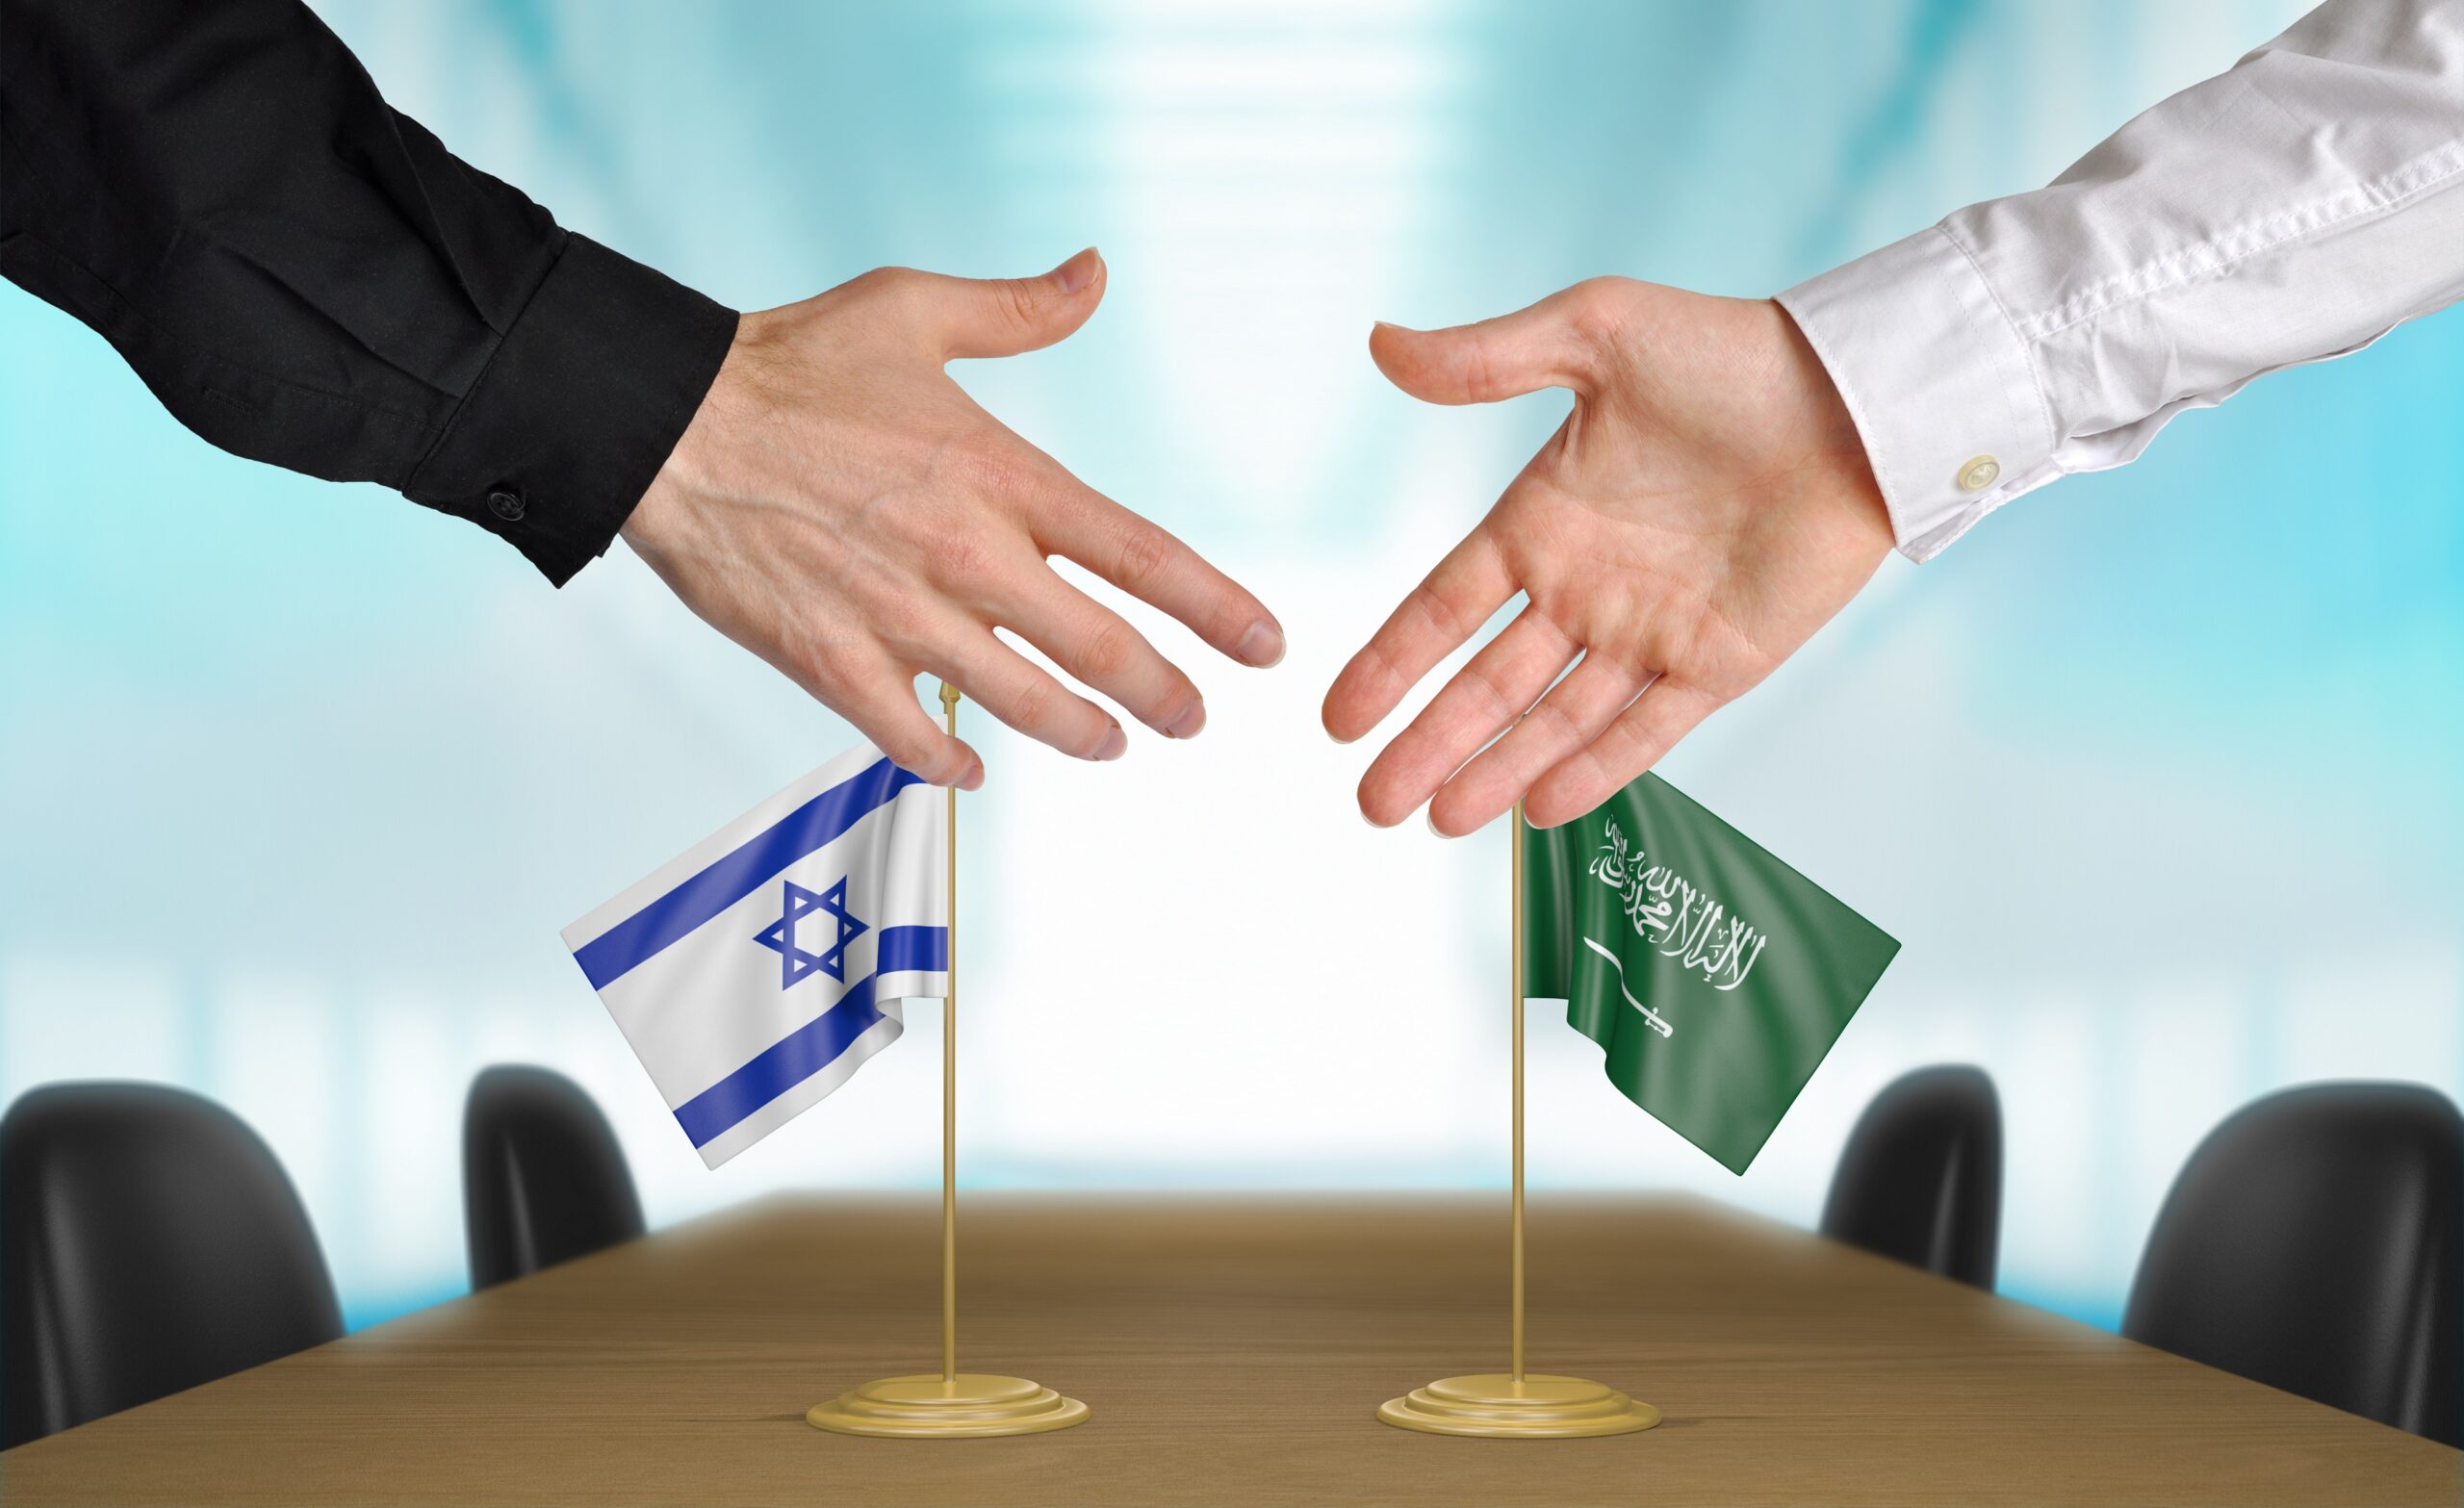 إعلامي إسرائيلي .. الشعب في إسرائيل "يتوق" للسلام مع المملكة العربية السعودية